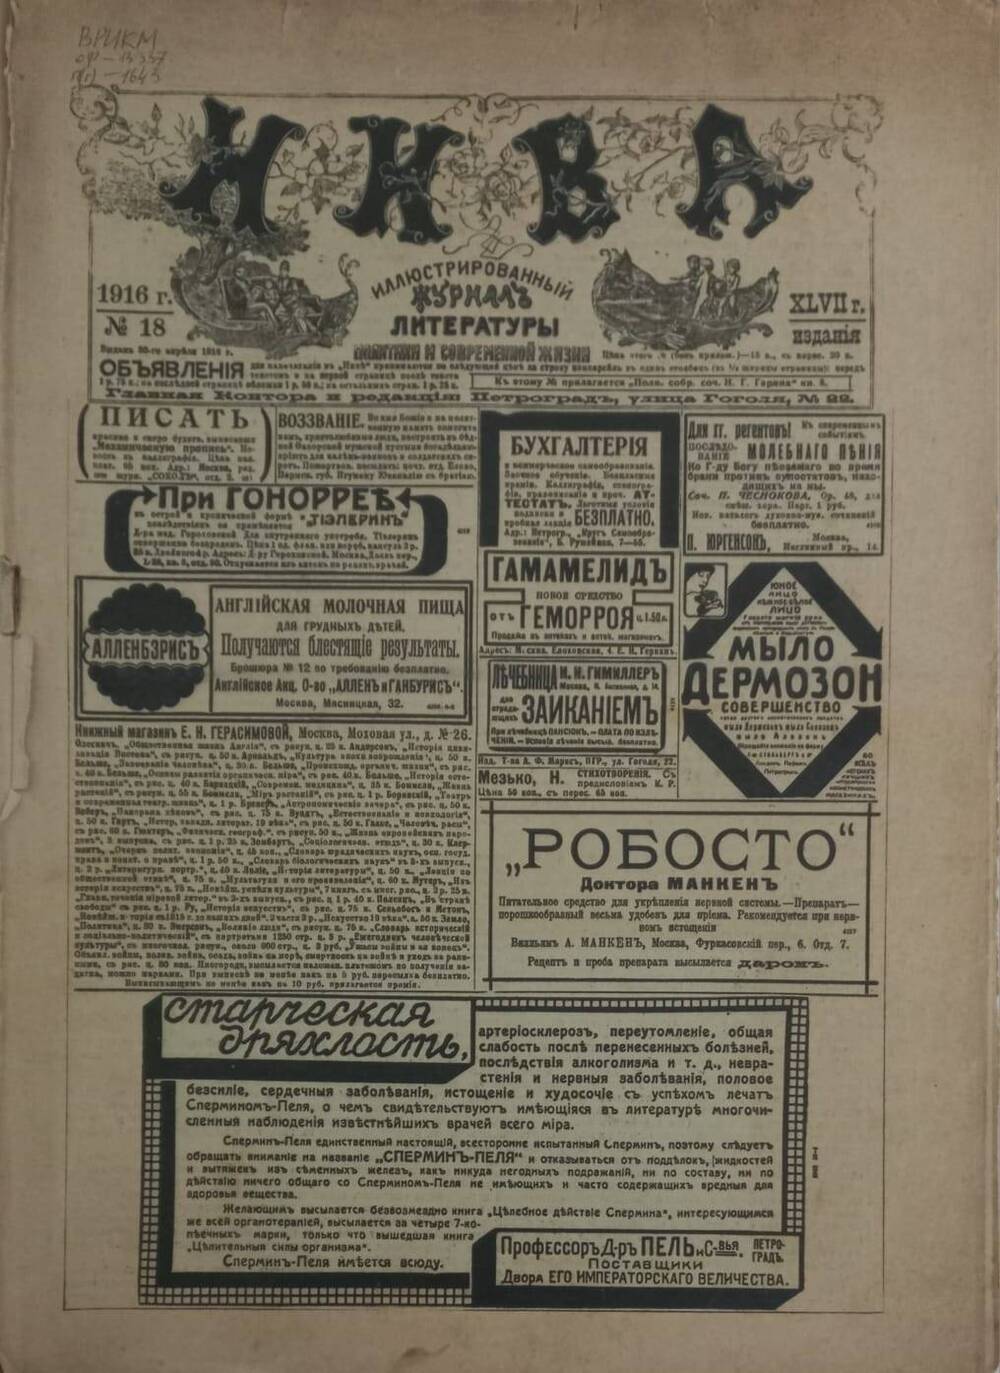 Иллюстрированный журнал литературы политики и современной жизни НИВА № 18 от 30 апреля 1916 года